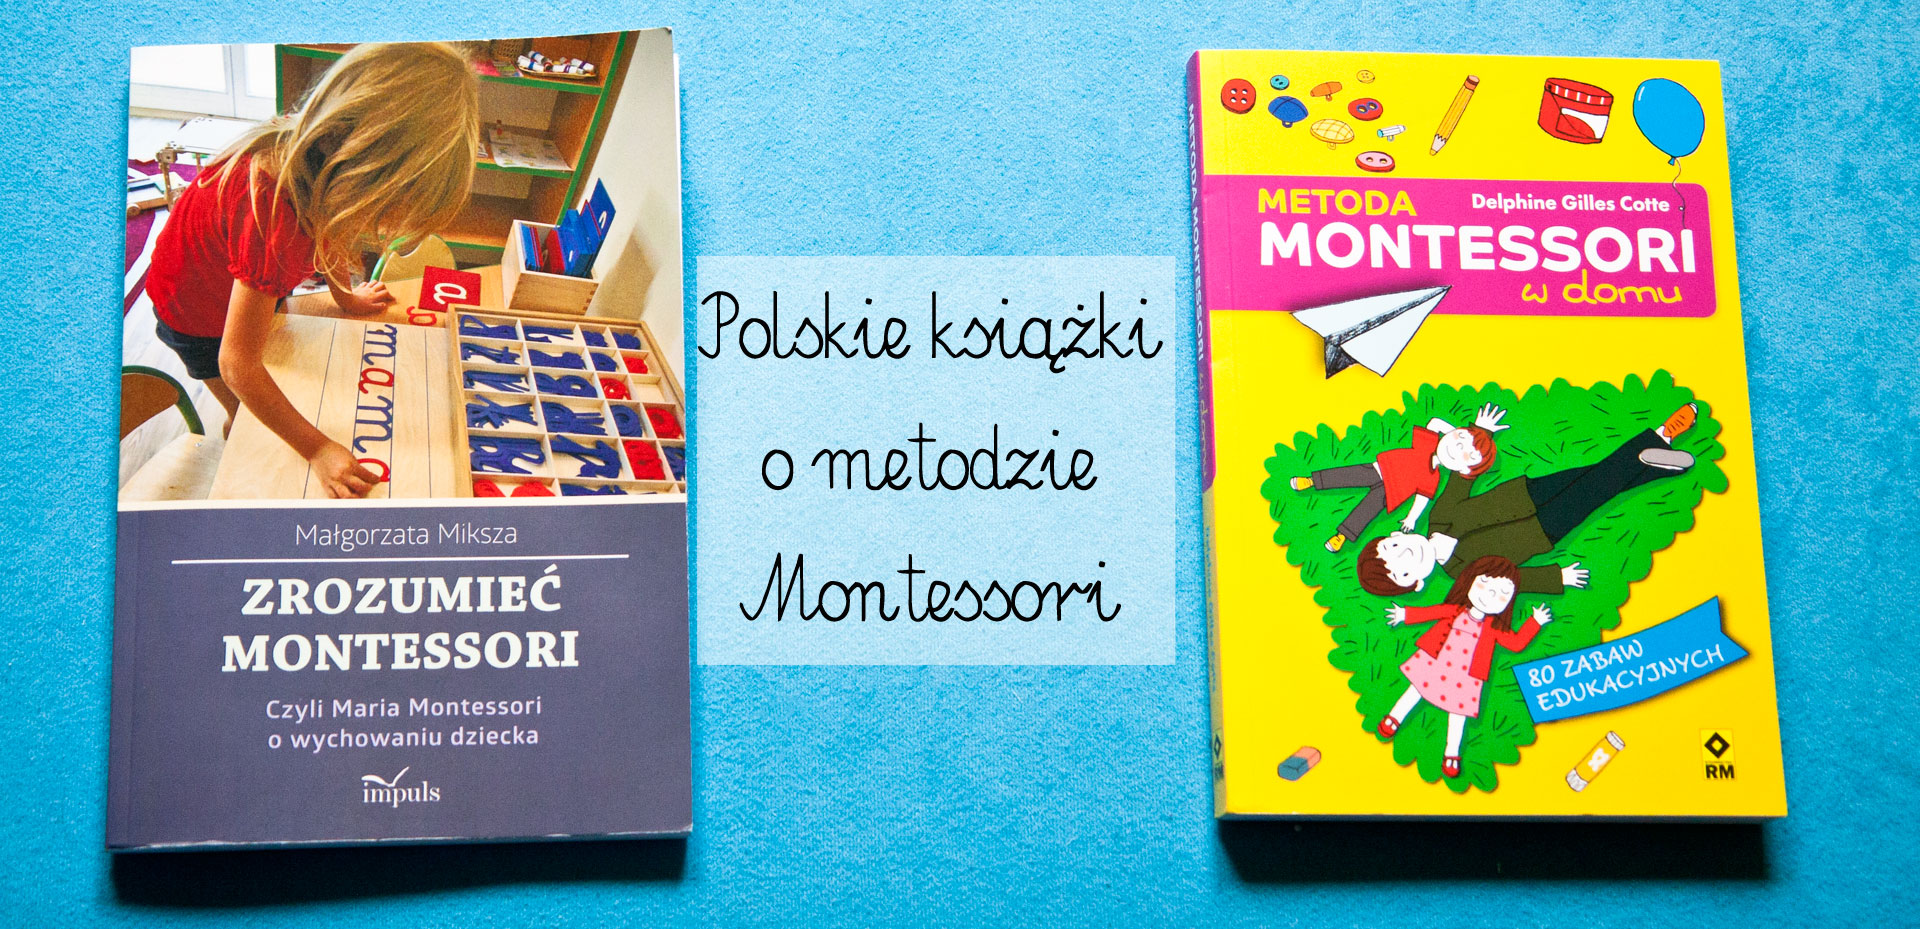 polskie ksiązki o montessori, książki o montessori po polsku, książki montessori dla rodziców